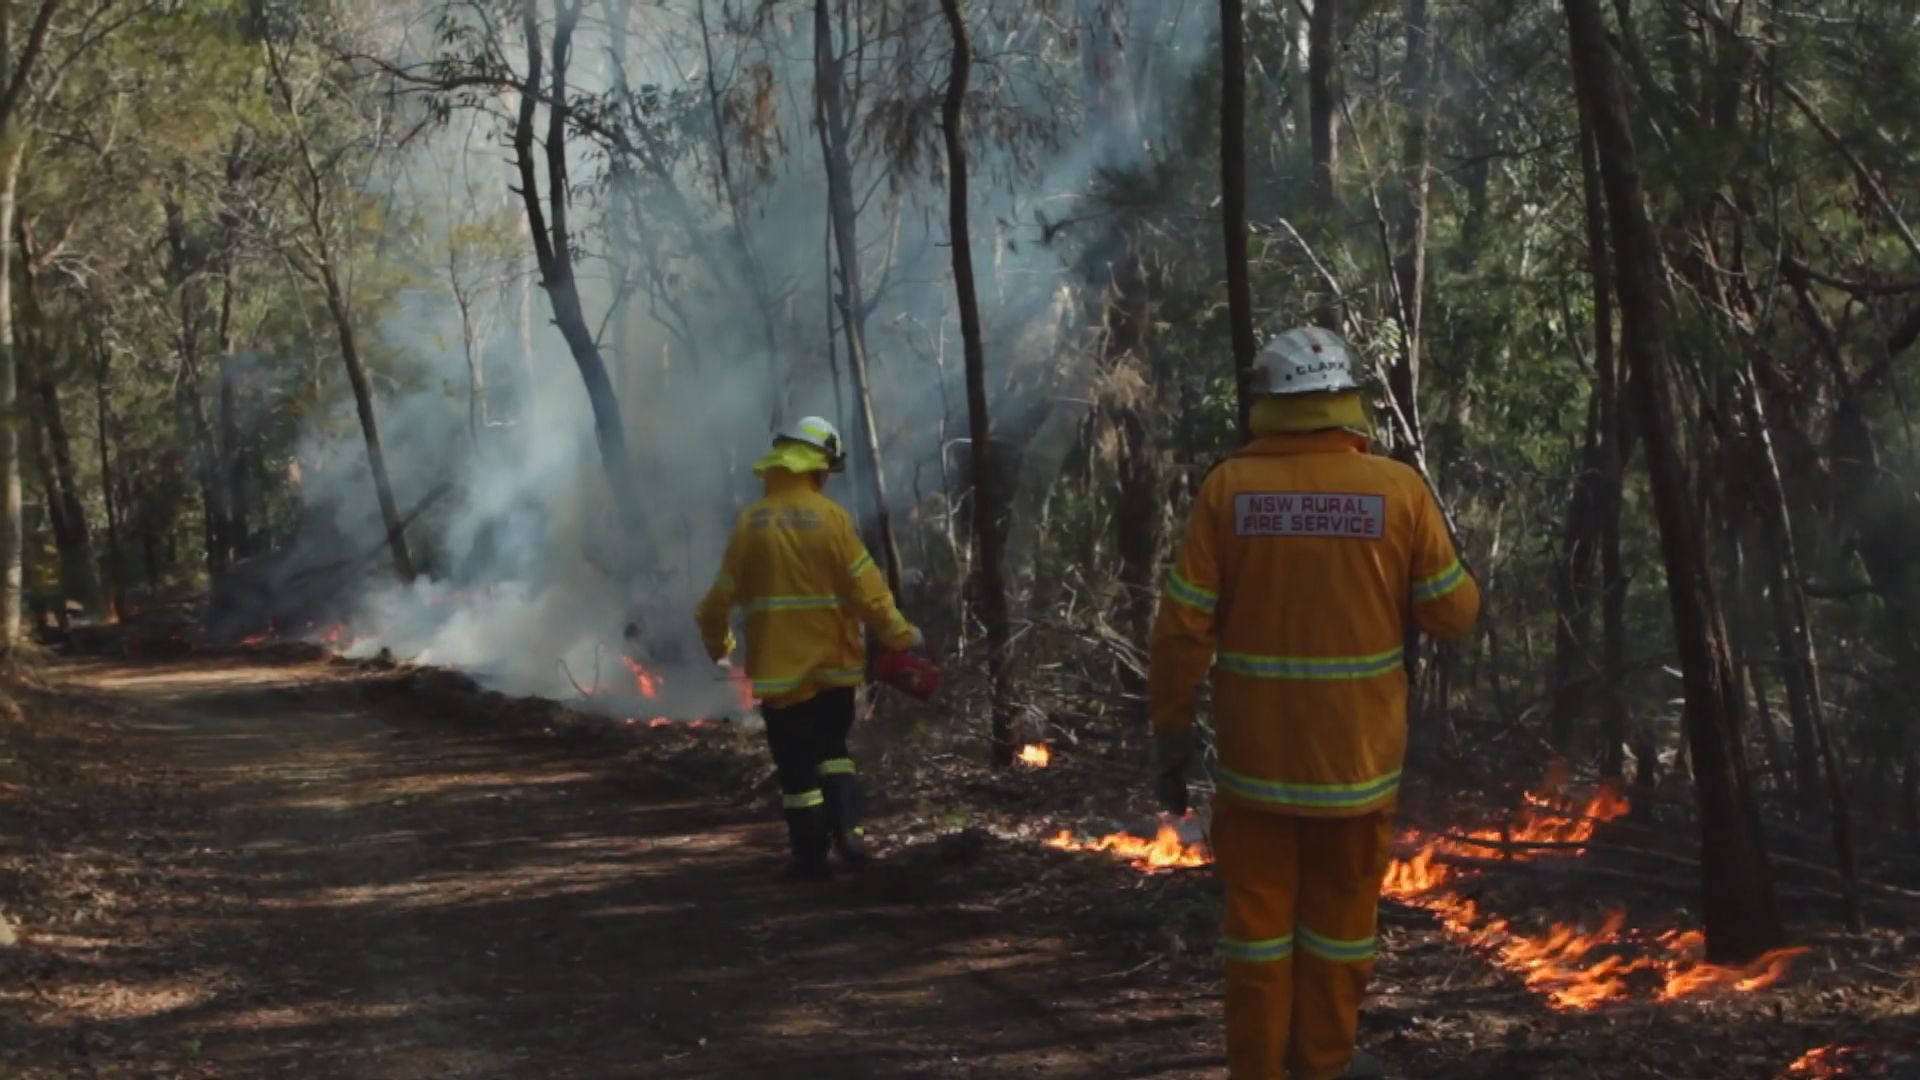 消防部門燒植被製造防火帶 悉尼空氣質素急轉差